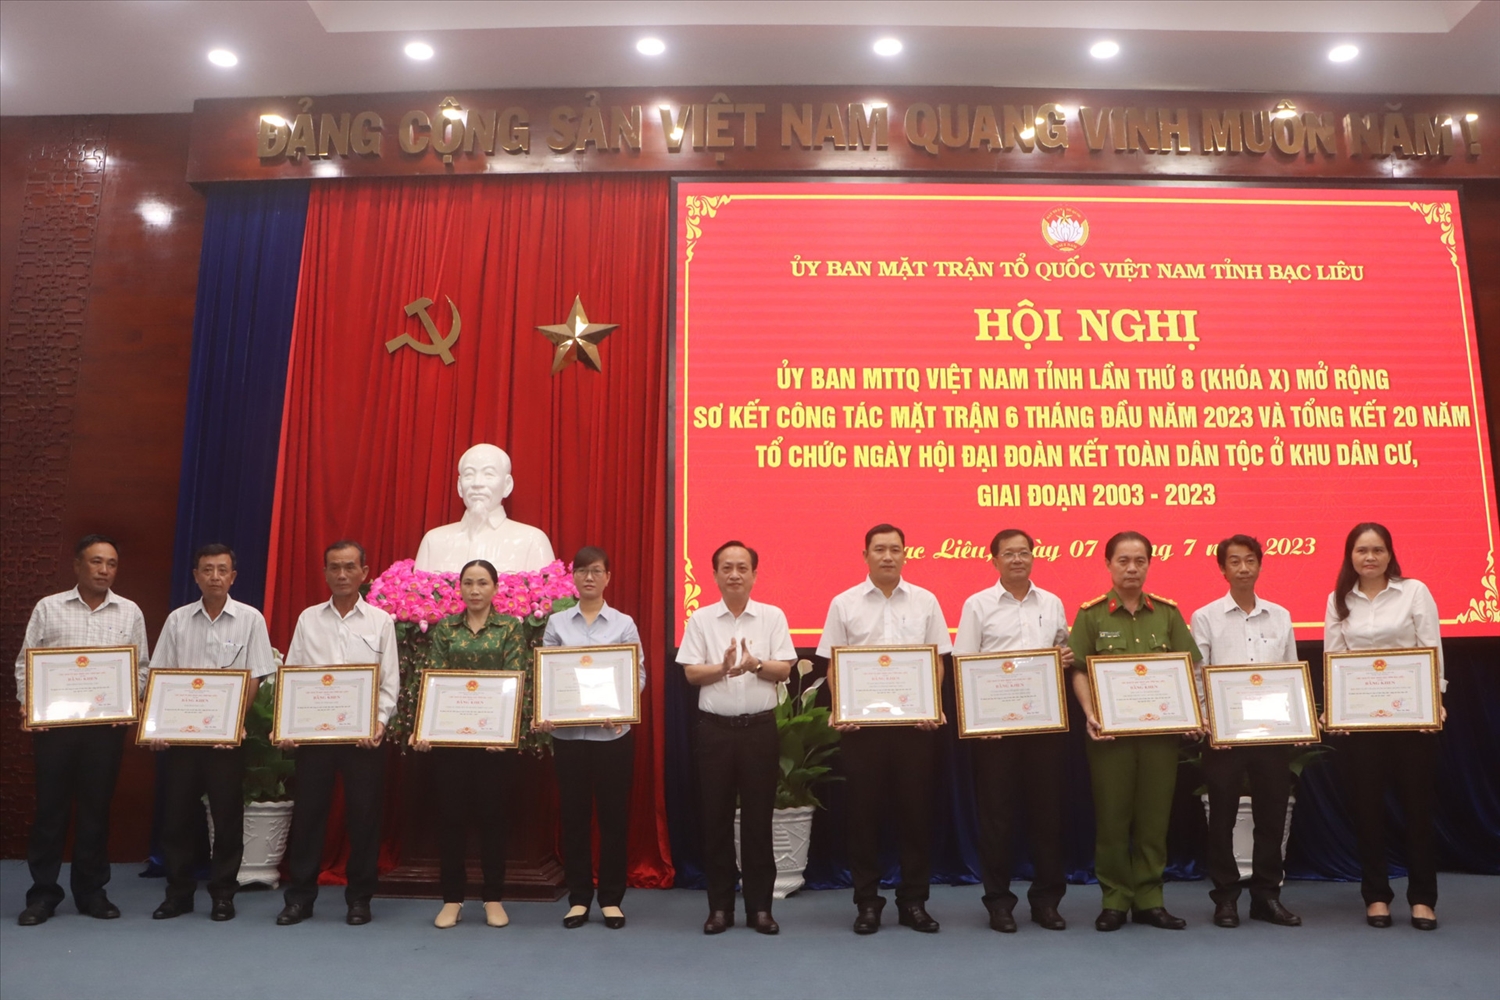 Chủ tịch UBND tỉnh Bạc Liêu Phạm Văn Thiều tặng bằng khen cho các tập thể, cá nhân có thành tích xuất sắc trong tham gia tổ chức Ngày hội đoàn kết đại đoàn kết toàn dân tộc giai đoạn 2003-2023.